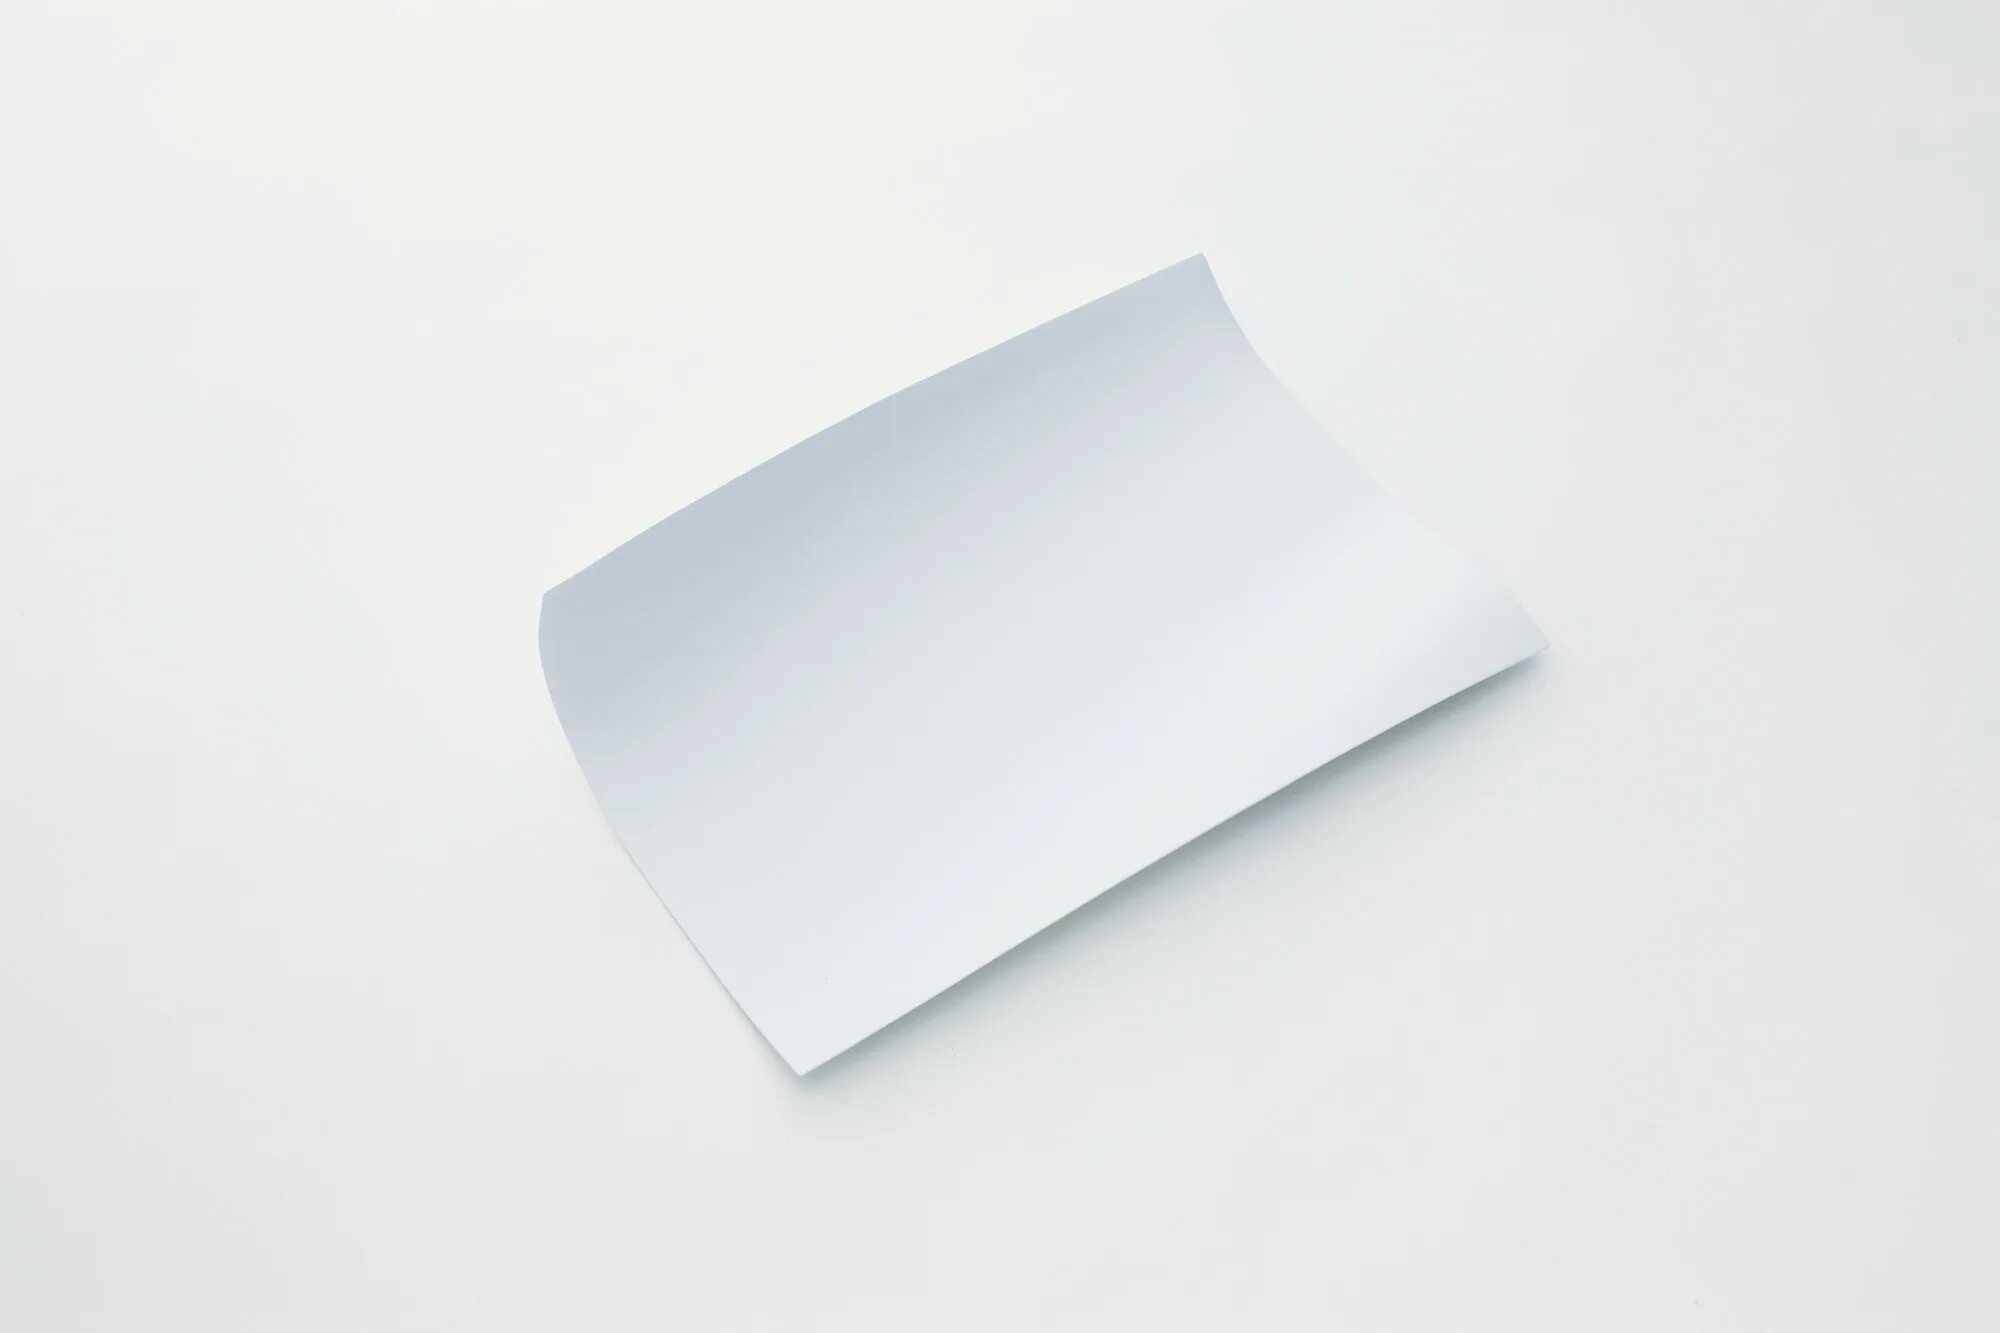 Проявляющая бумага. Лист бумаги. Белый лист бумаги. Лист бумаги на белом фоне. Бумажный лист.